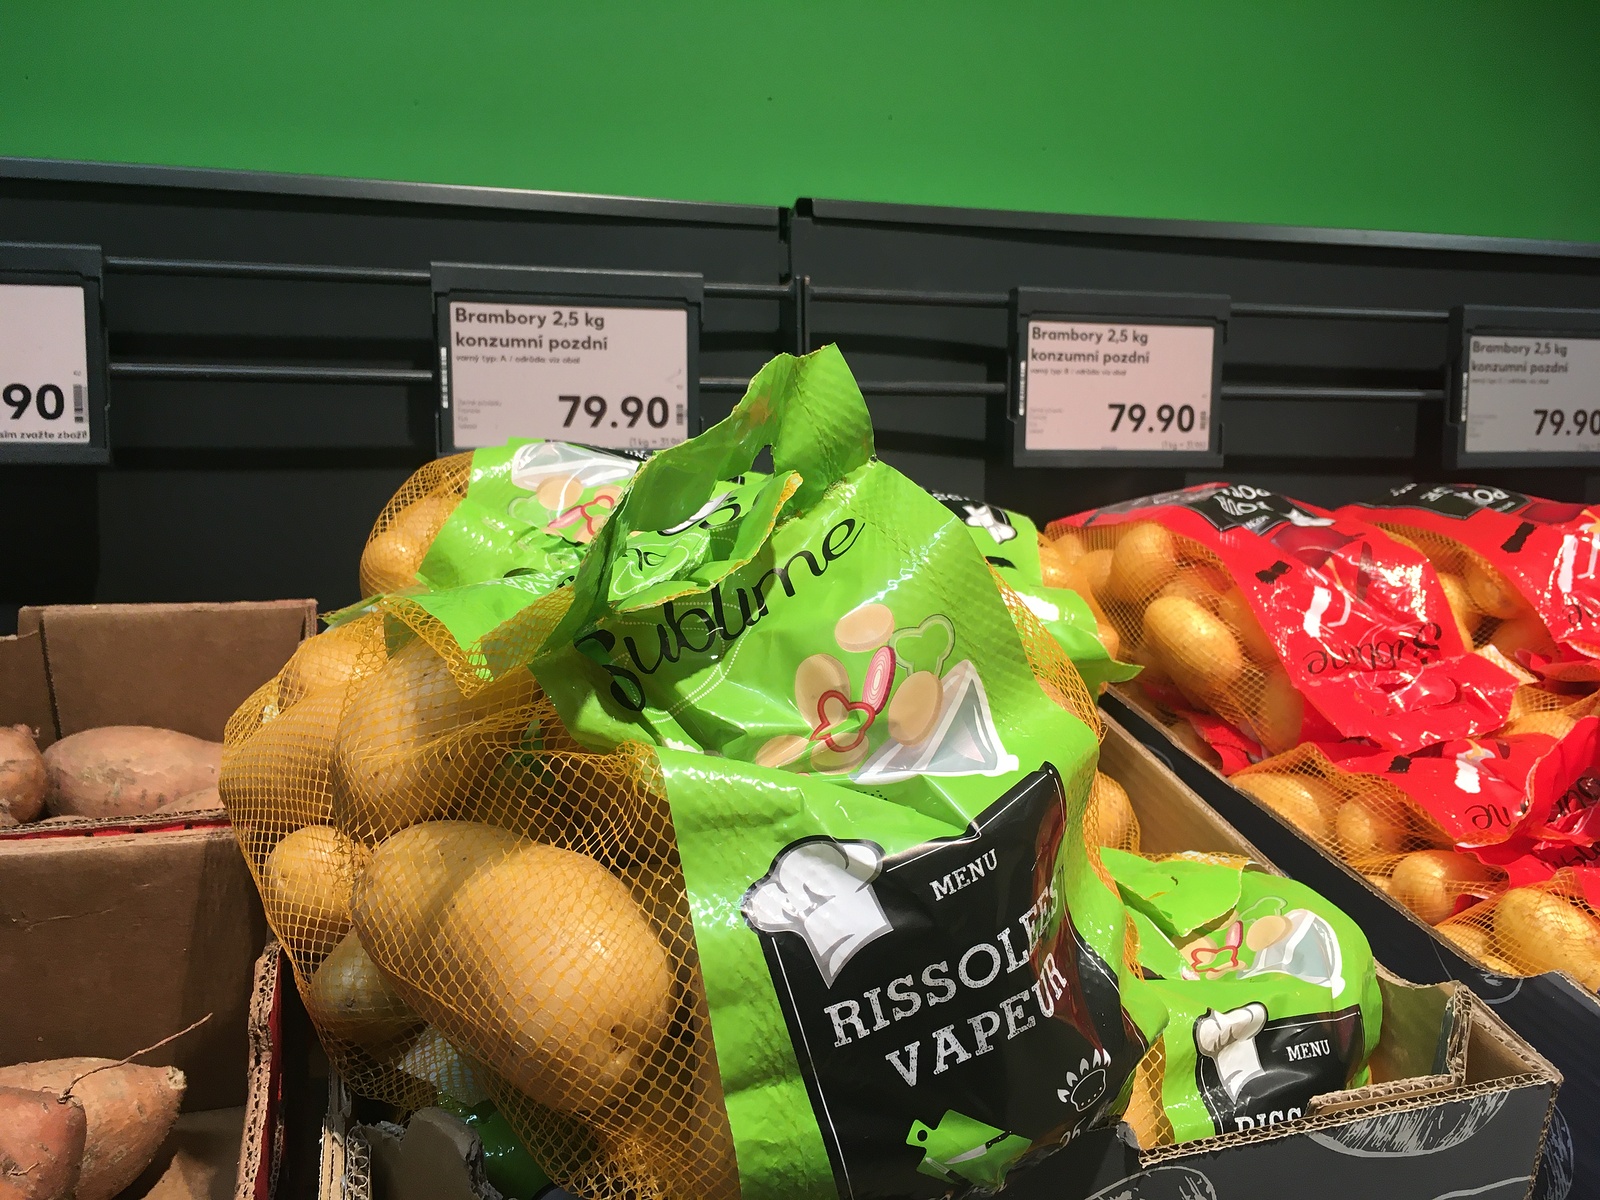 Co může za astronomický nárůst cen ovoce a zeleniny? Prý koronavirus a  inflace - Zlínský deník